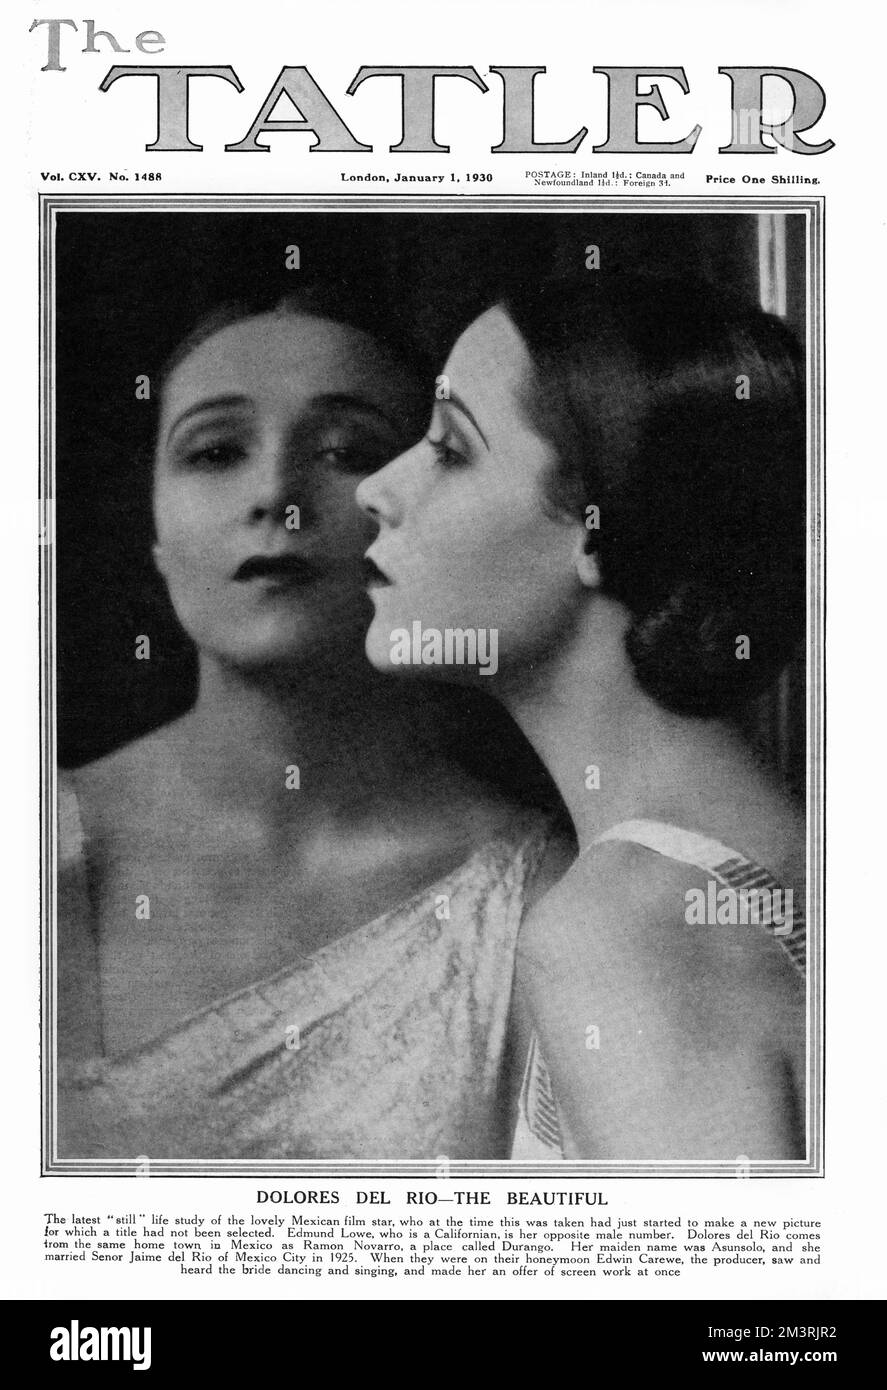 Couverture du Tatler avec le film, la télévision et l'actrice Dolores del Rio (1904-1983) d'origine mexicaine. Elle a été une star hollywoodienne en 1920s et 1930s, et l'une des figures féminines les plus importantes de l'âge d'or du cinéma mexicain en 1940s et 1950s 1930 Banque D'Images